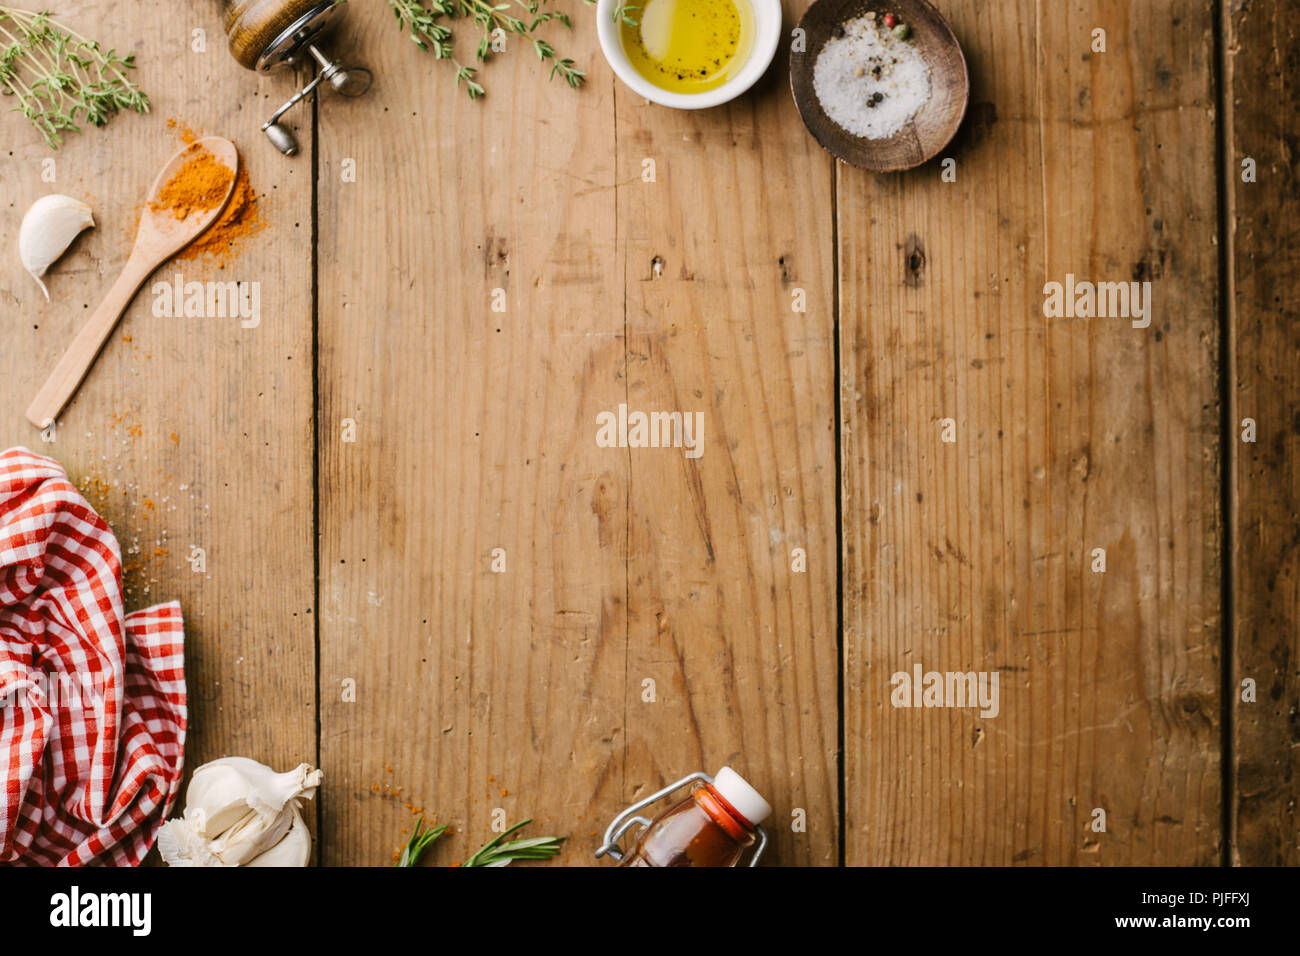 Cibo sano concetto di cucina a vista con le spezie e gli ingredienti per cucinare sul vecchio tavolo in legno. Appartamento minimalista laici. Vista da sopra con copia spazio. Sele Foto Stock